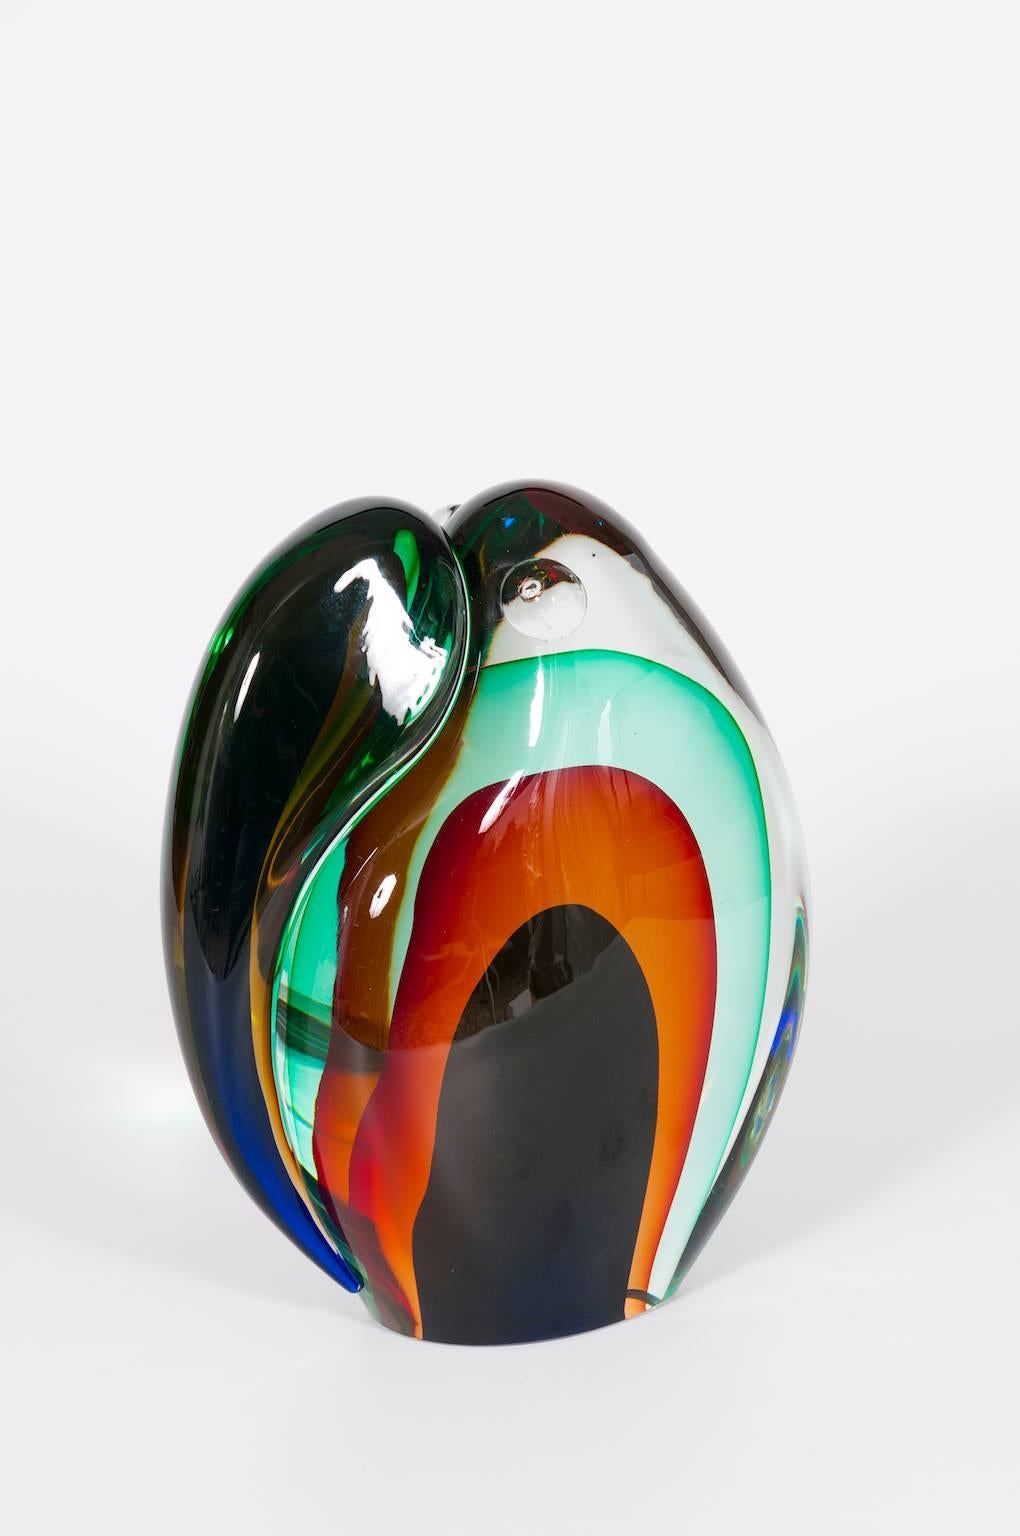 Romano Donà 1990 Sculpture Toucan en verre de Murano multicolore Venise Italie.
Voici un chef-d'œuvre captivant, témoin de l'art enchanteur de Murano, en Italie. Cette remarquable sculpture de toucan, réalisée en verre de Murano multicolore dans les